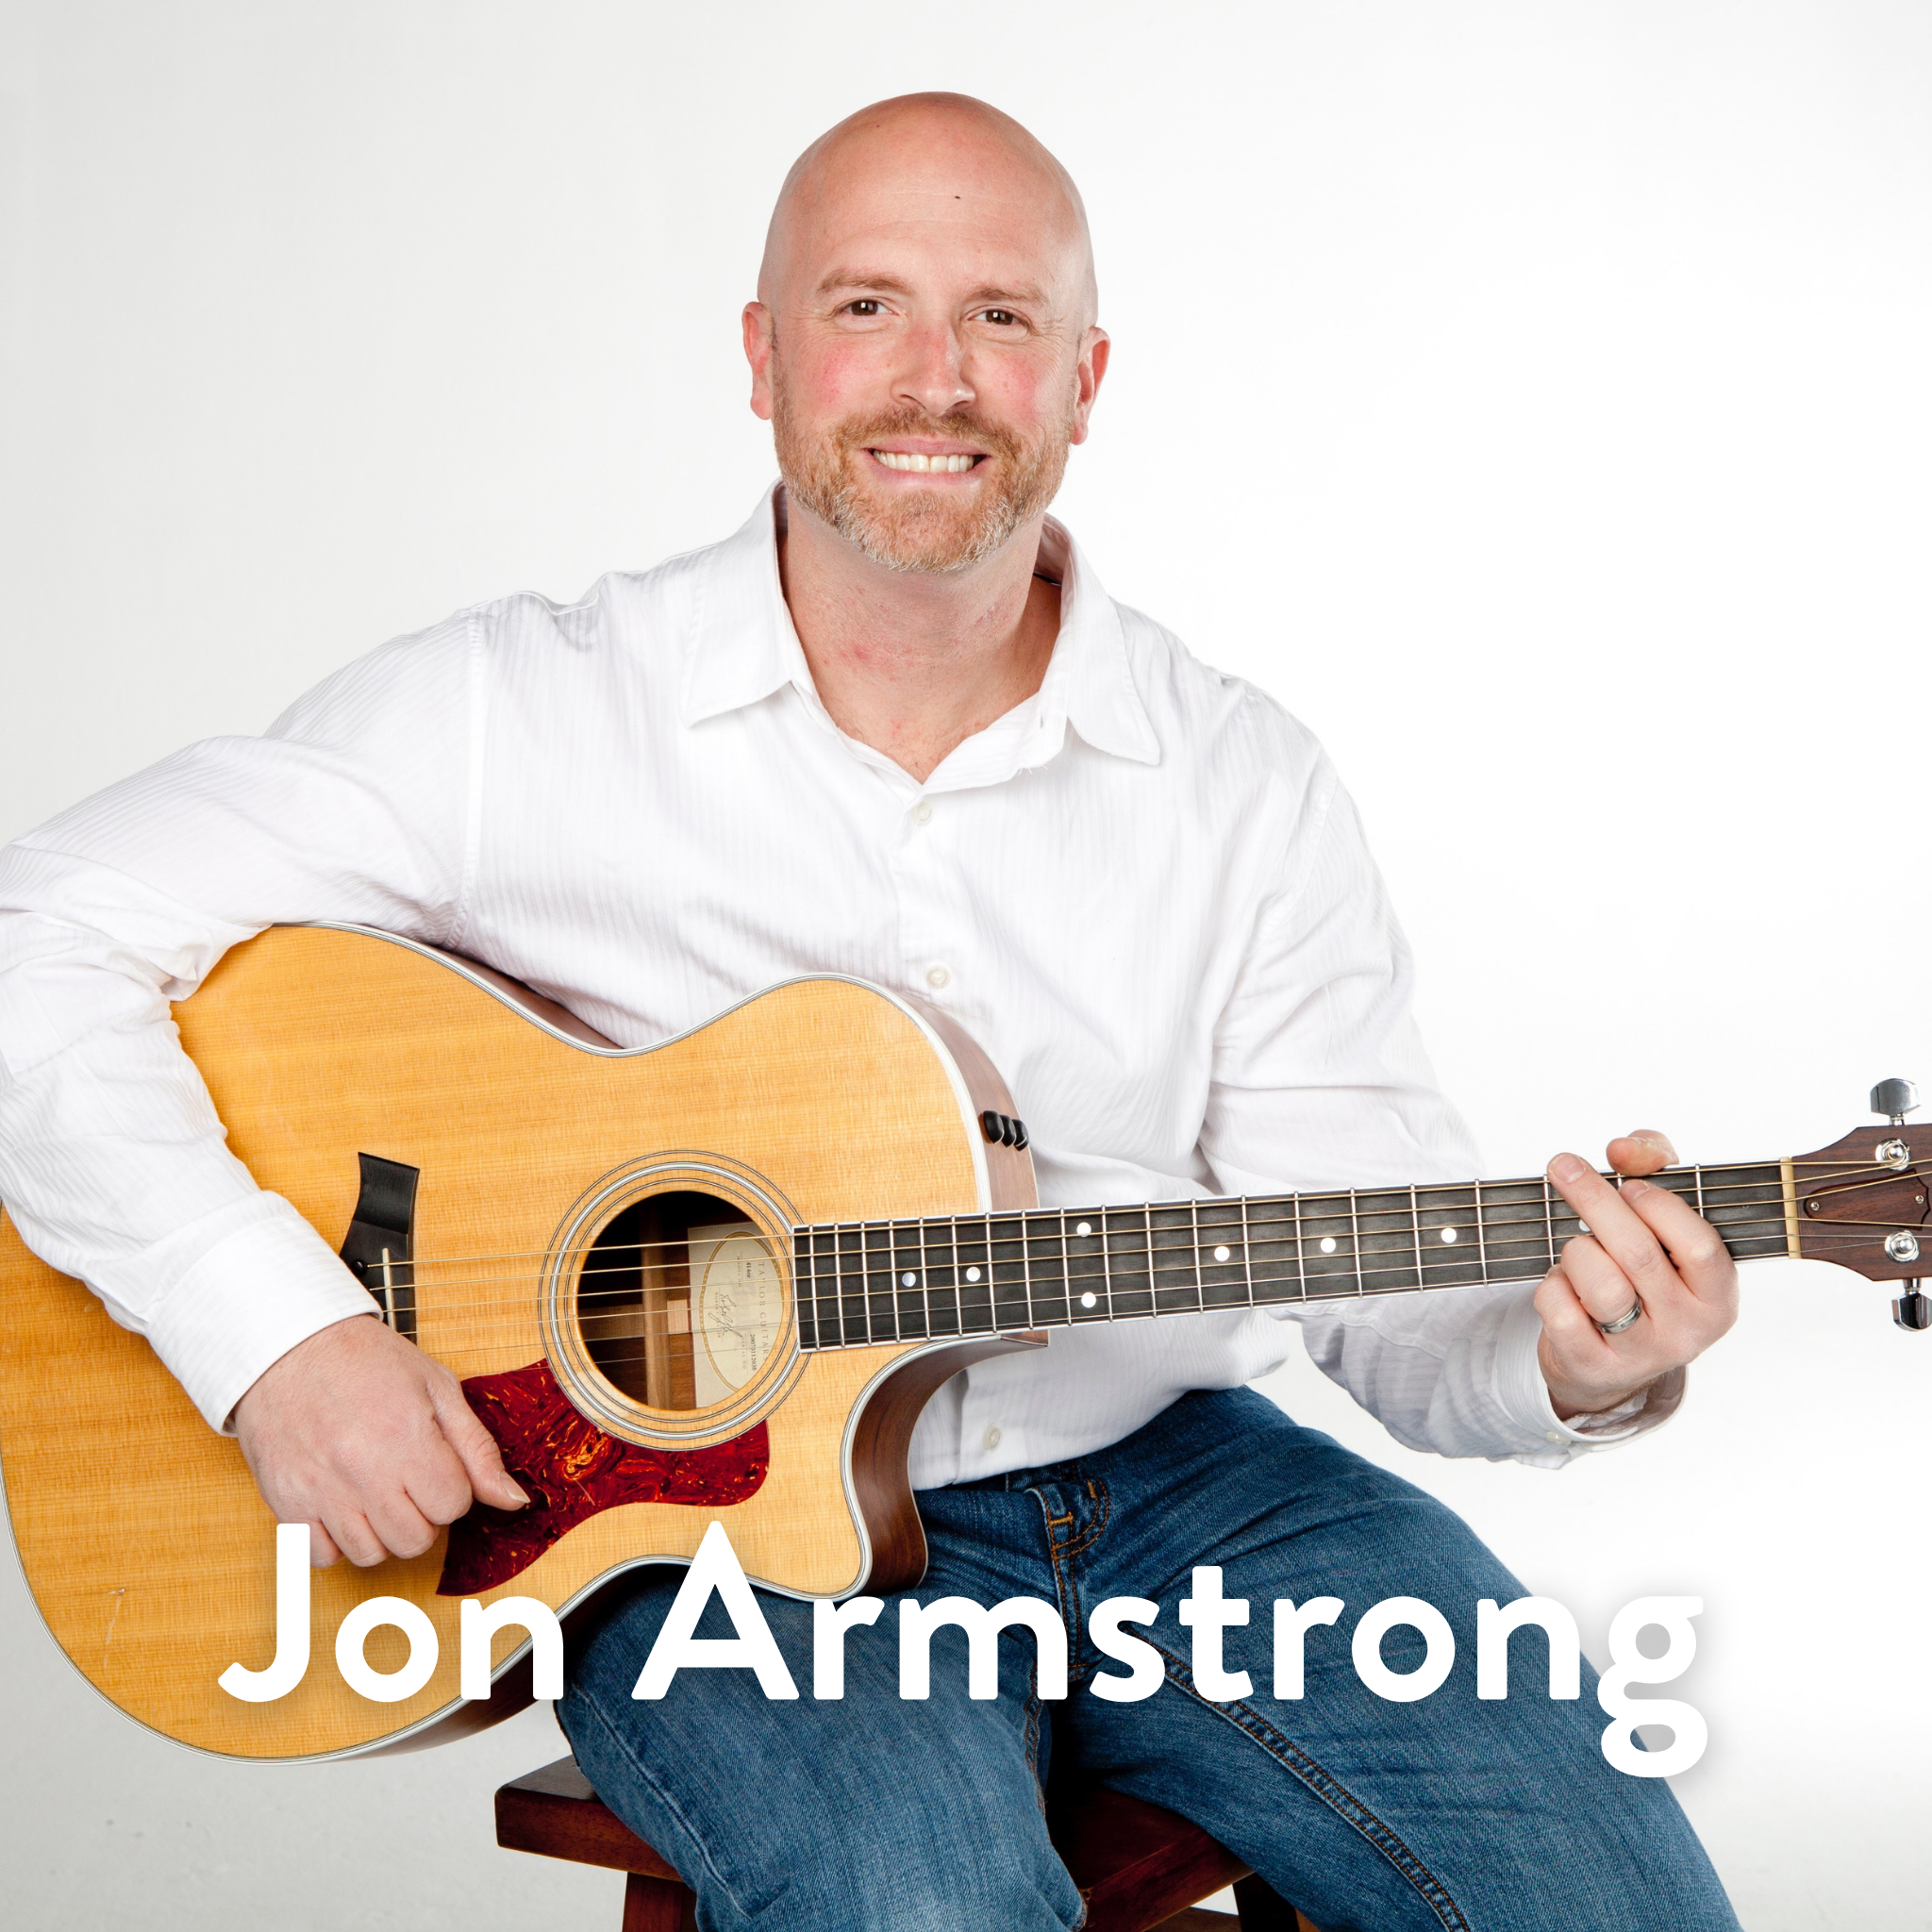 Jon Armstrong WEB.png